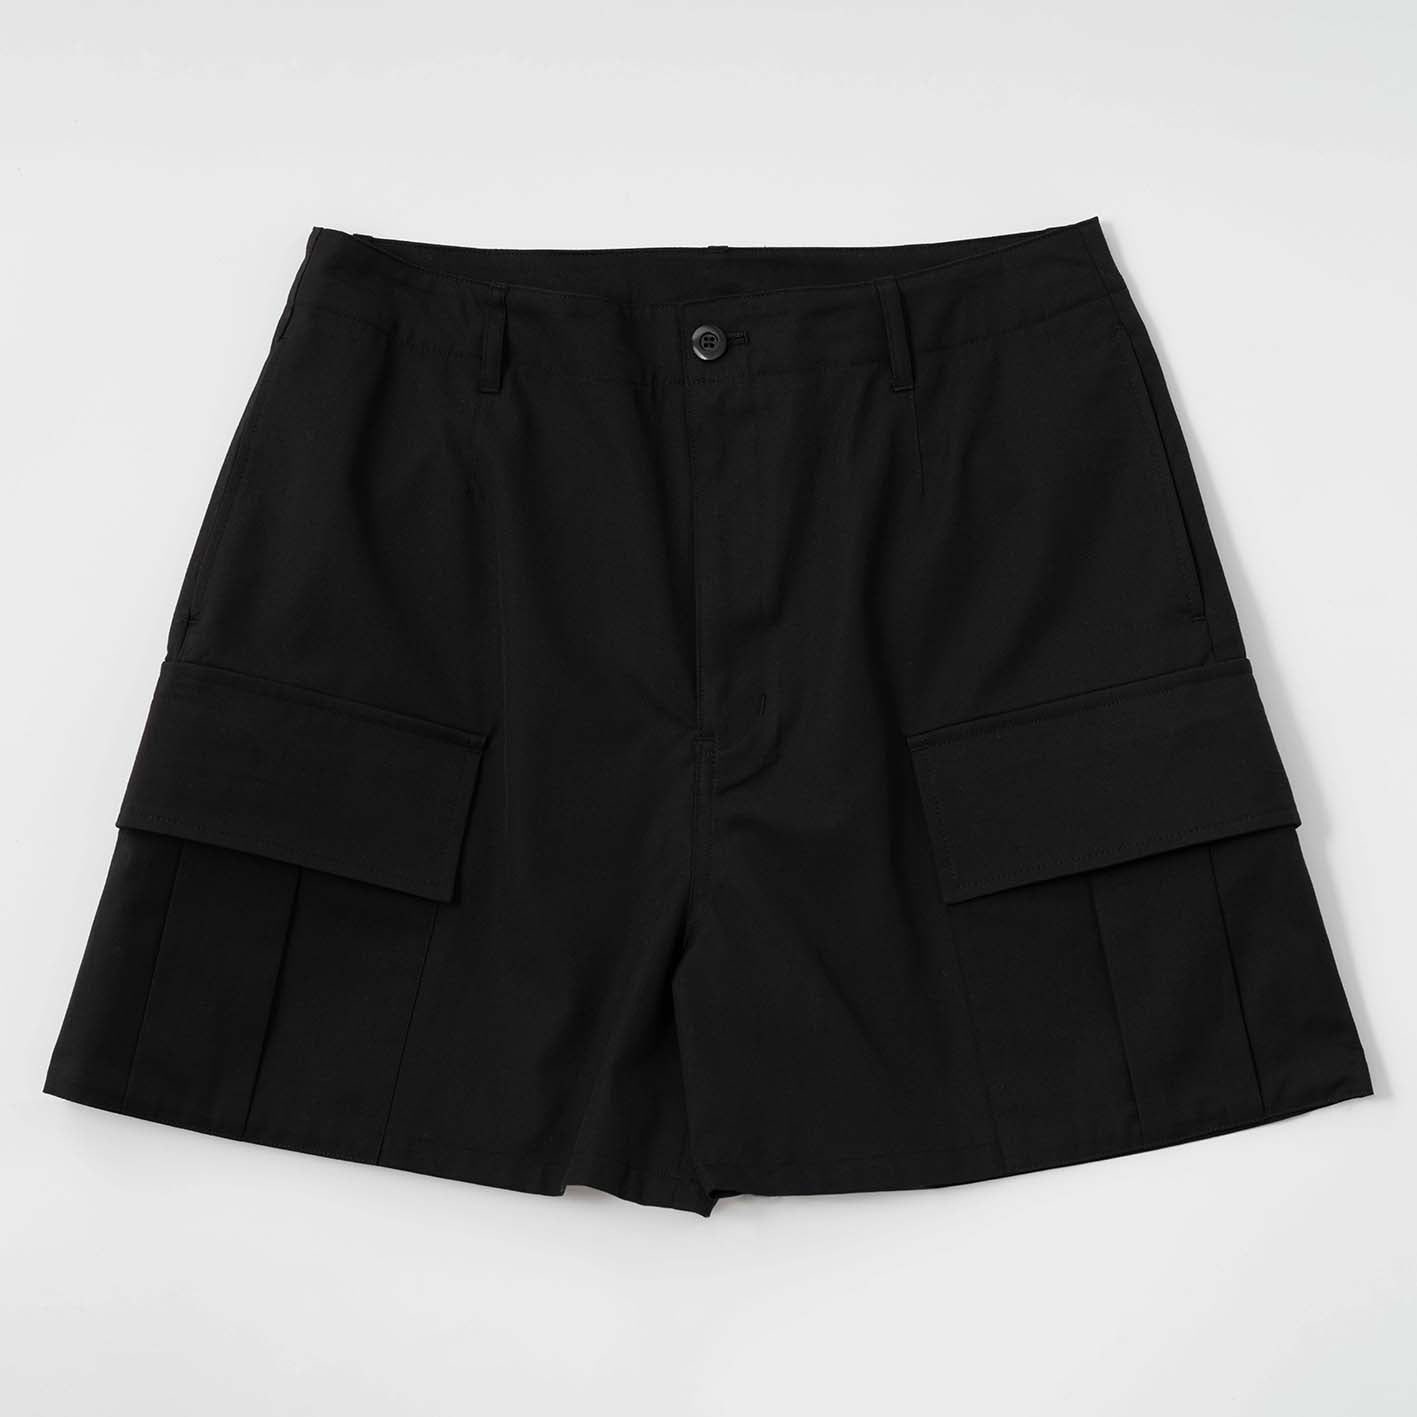 Unisex cargo shorts